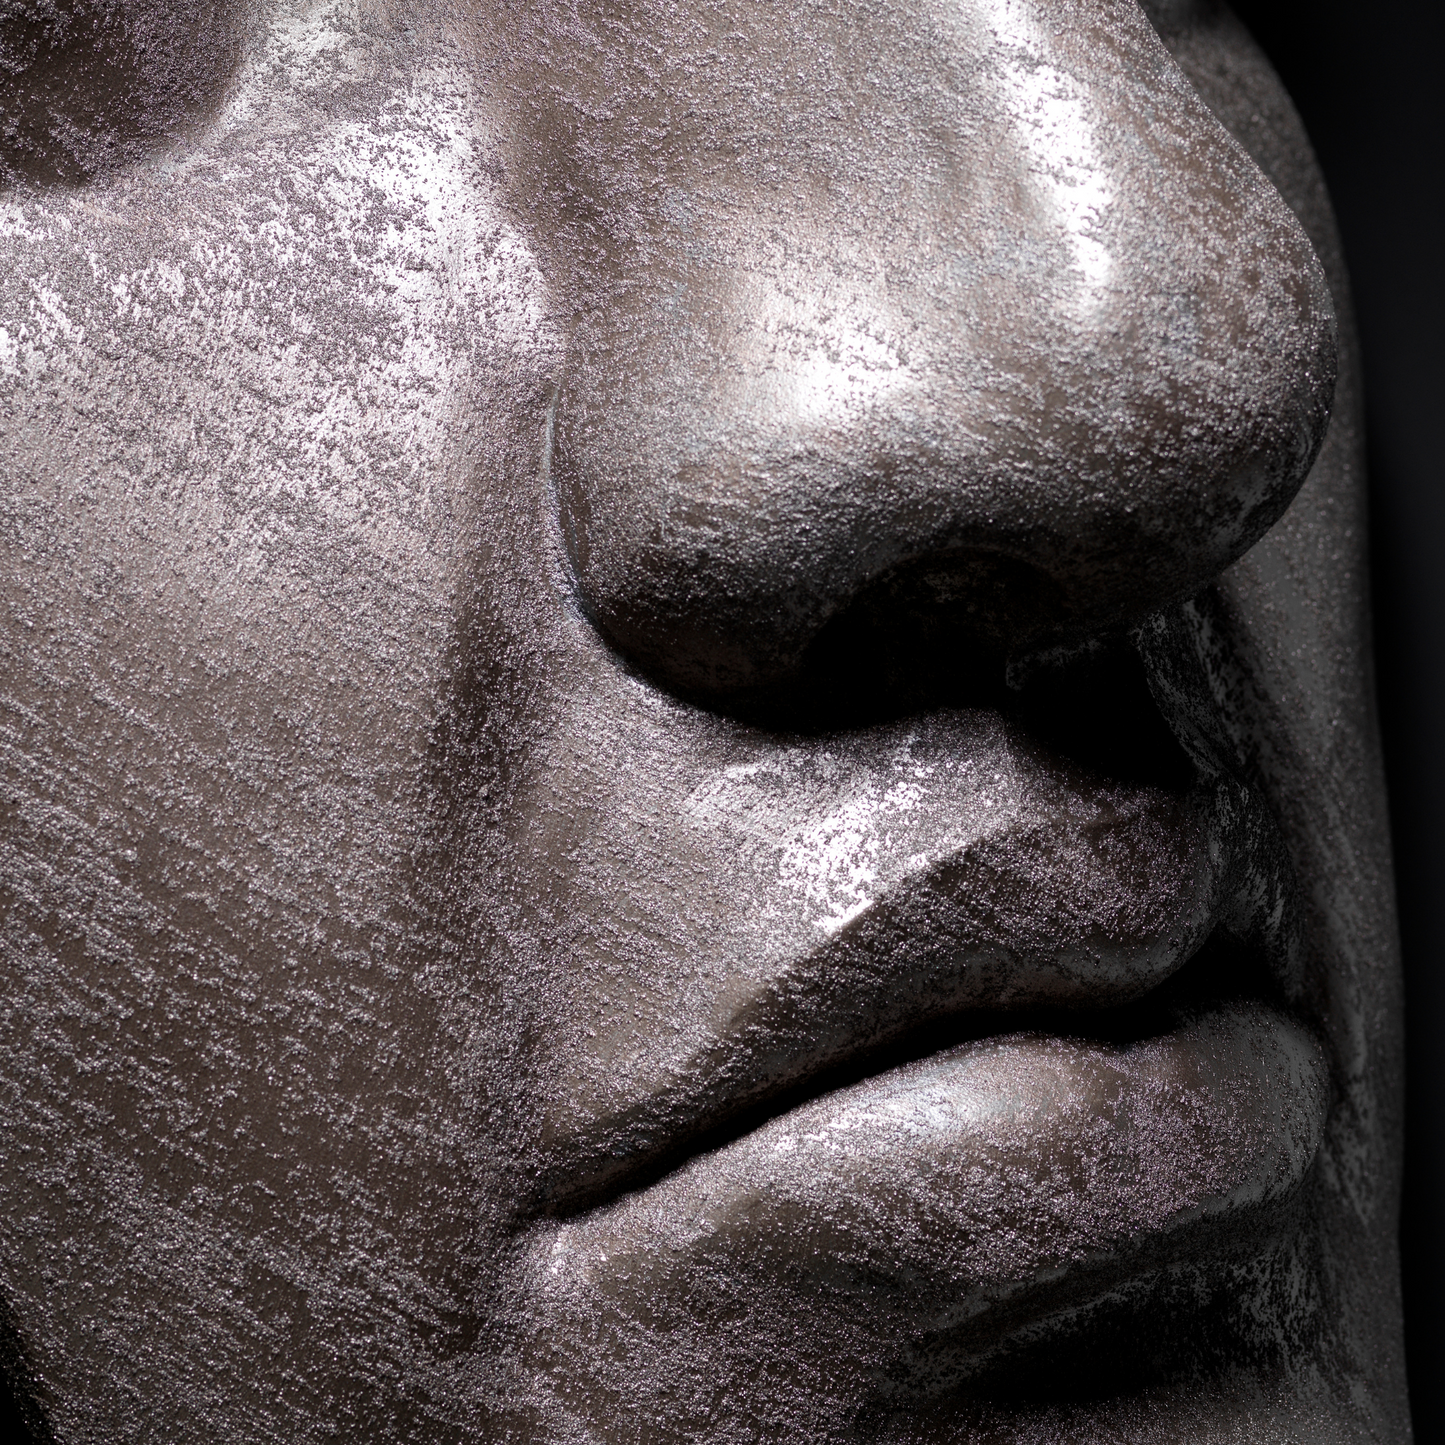 Extra Large 3D Wall Art Face Sculpture ( Bronze Venetian Plaster)